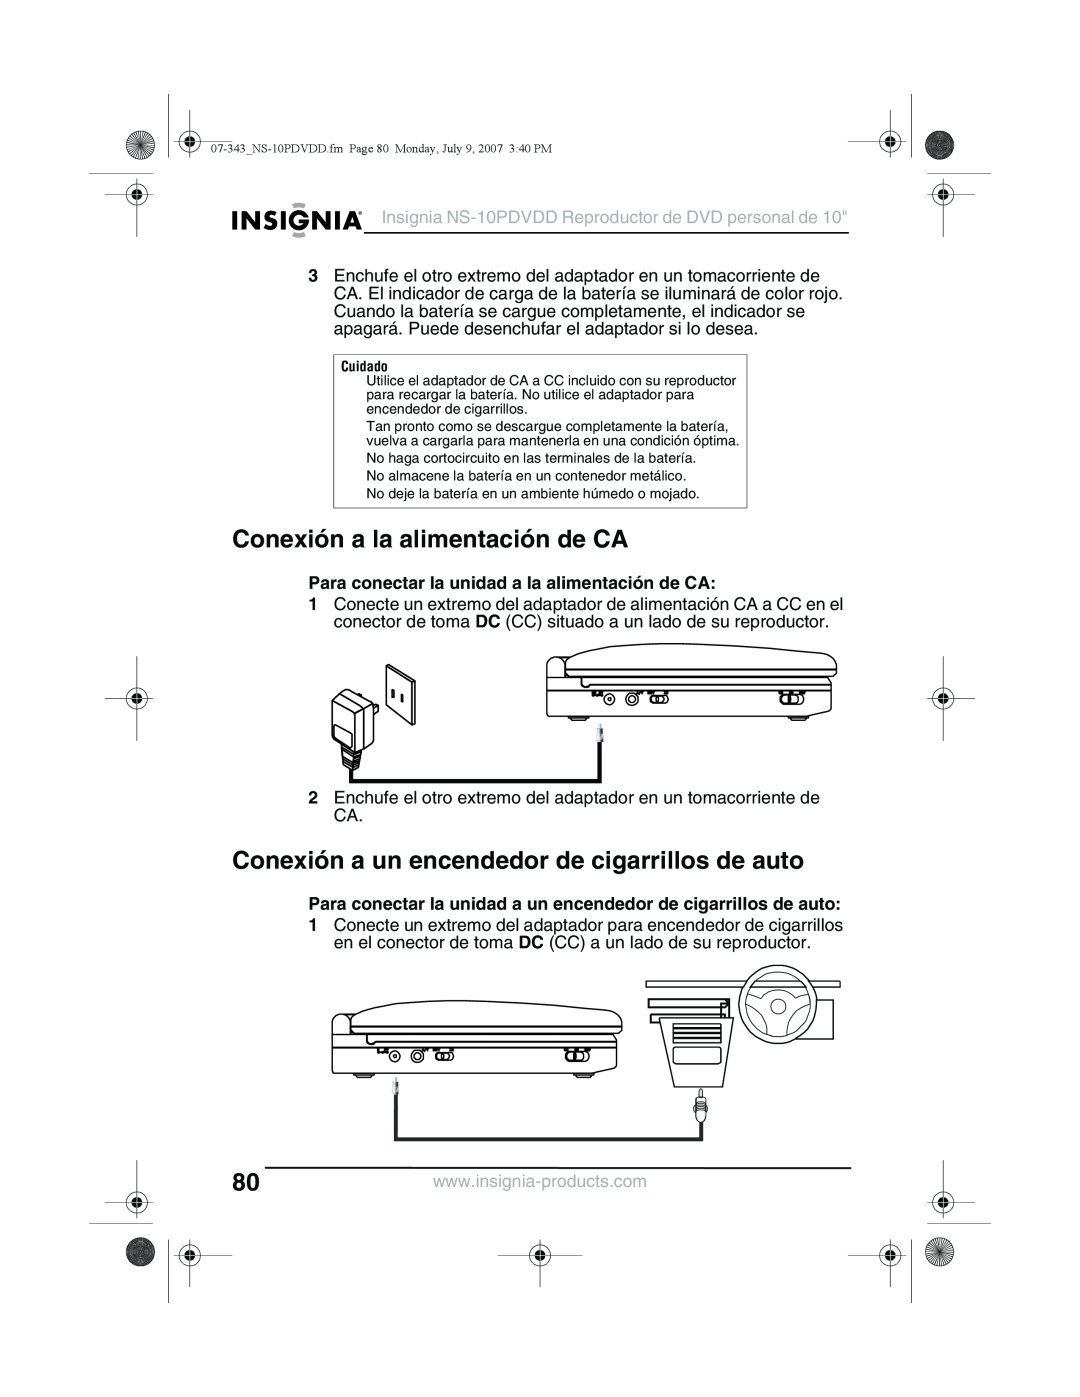 Insignia NS-10PDVDD manual Conexión a la alimentación de CA, Conexión a un encendedor de cigarrillos de auto 